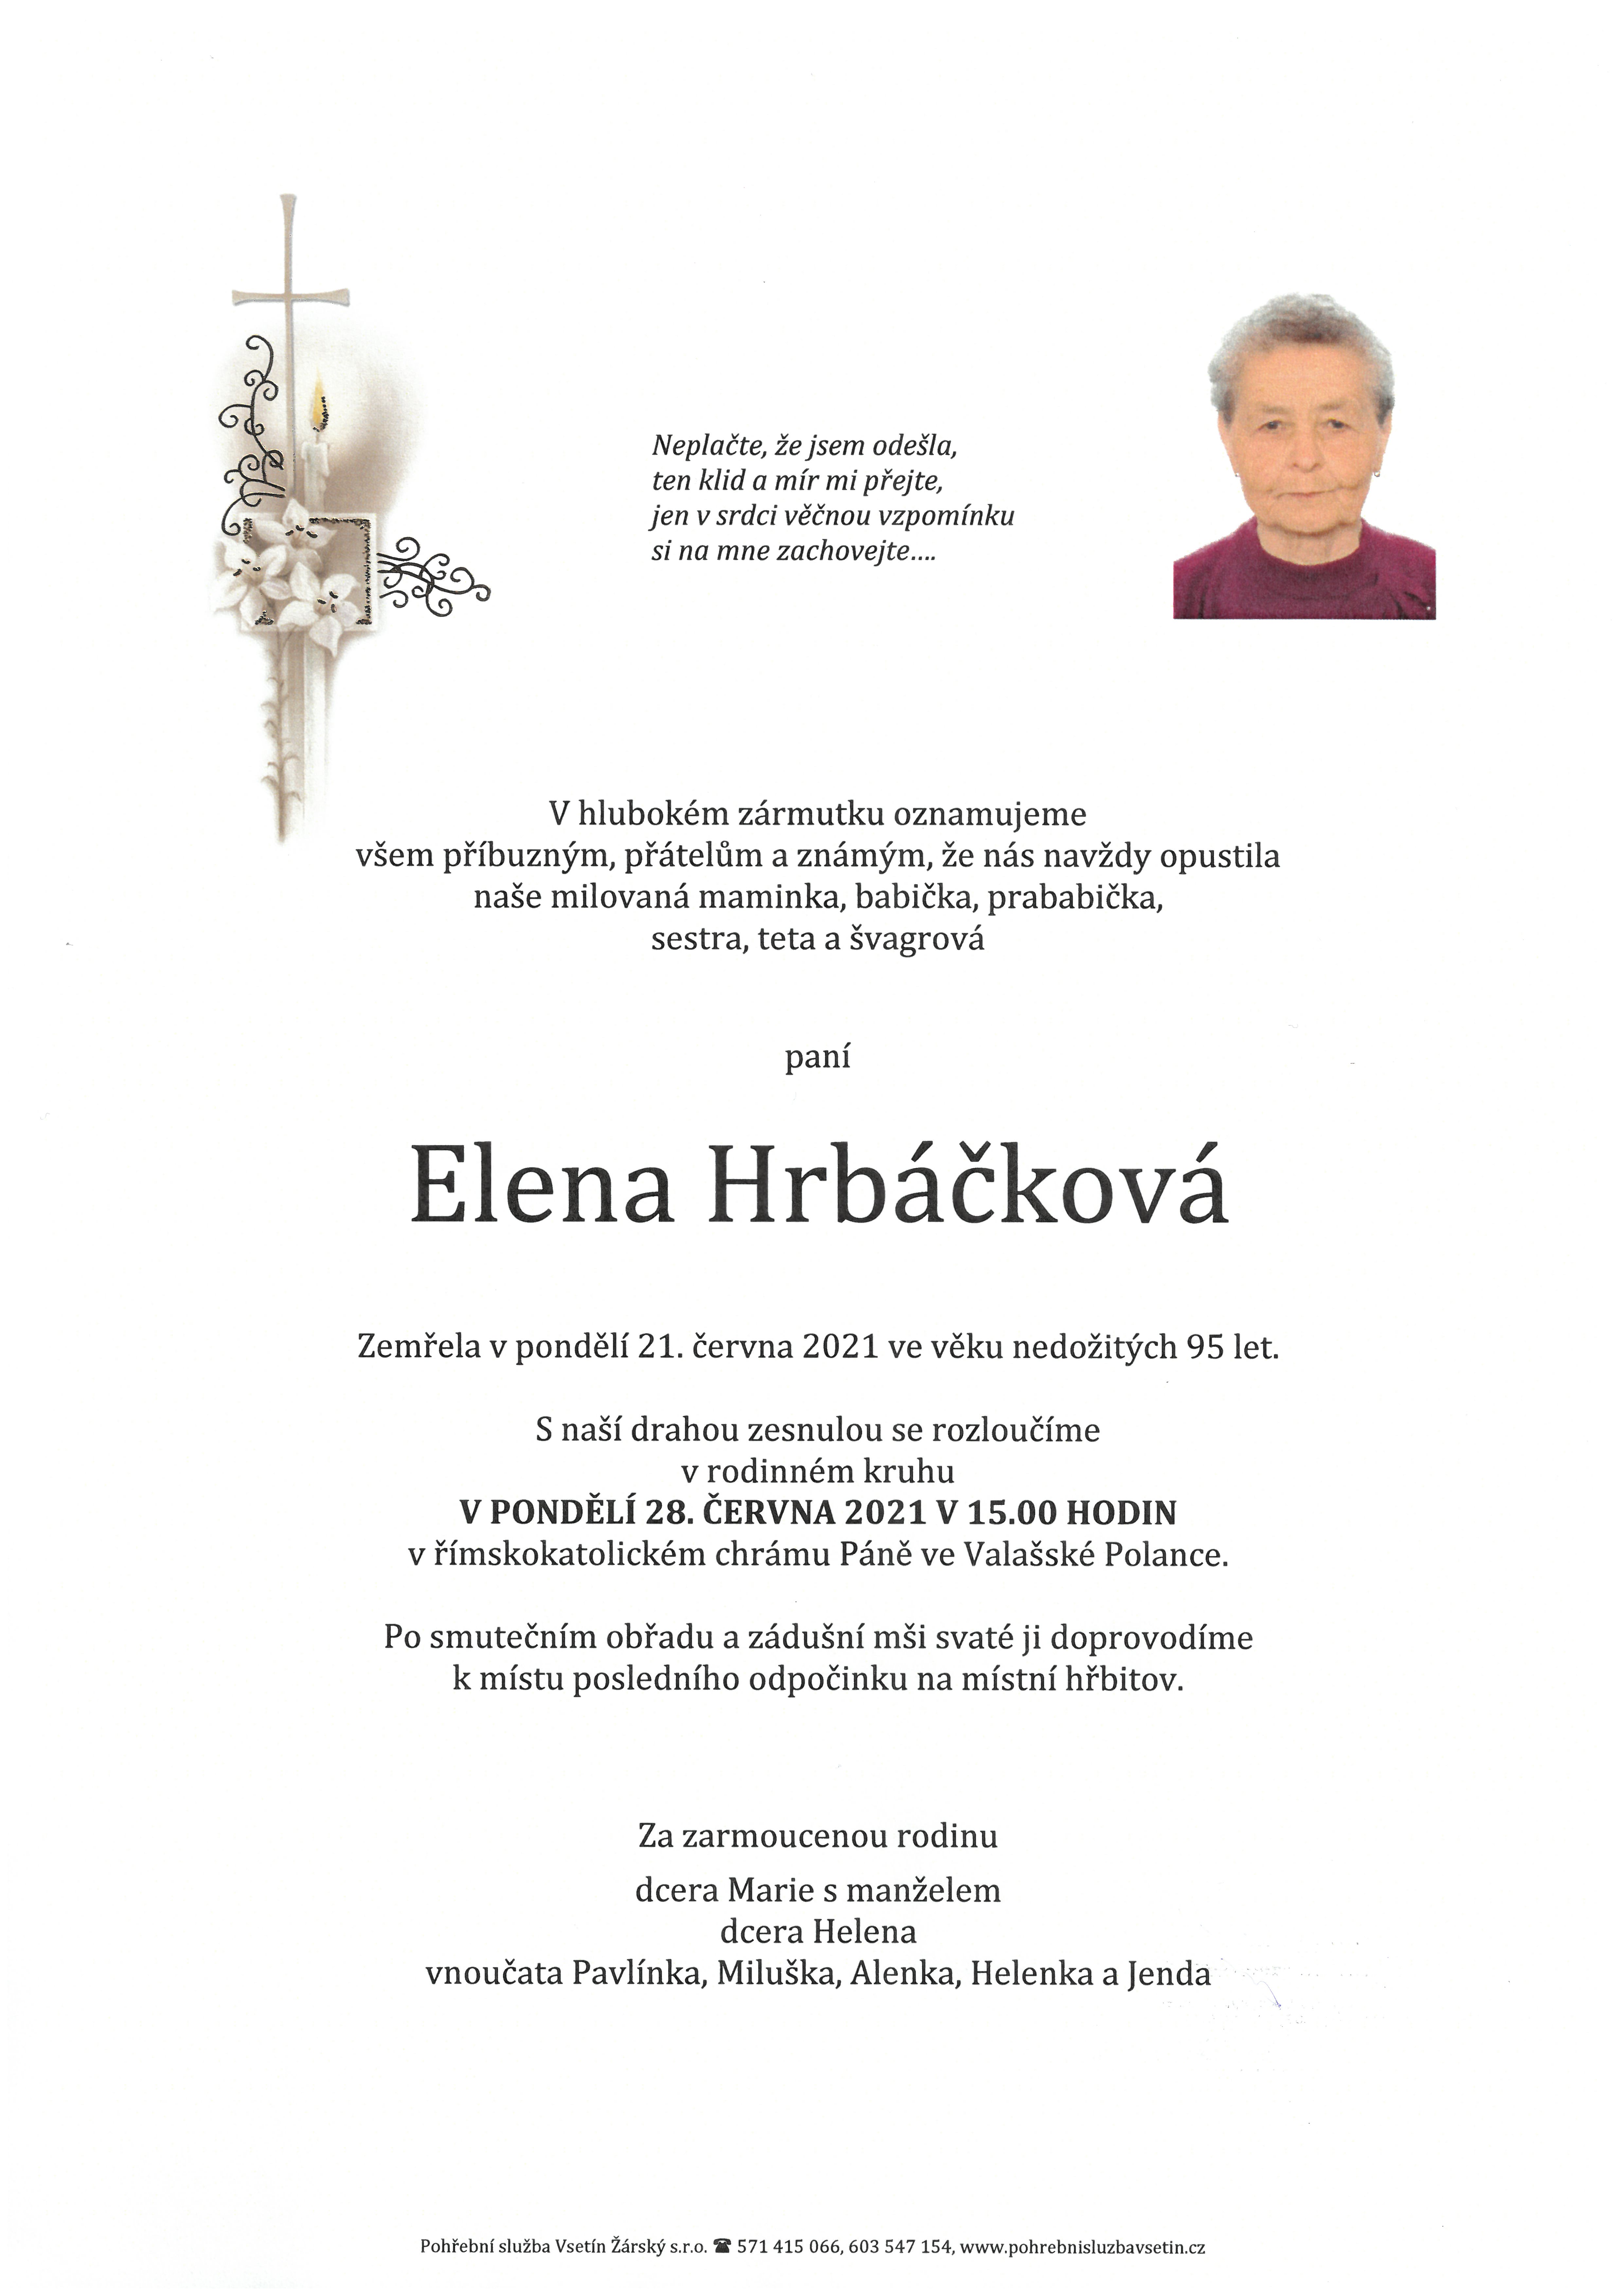 Elena Hrbáčková